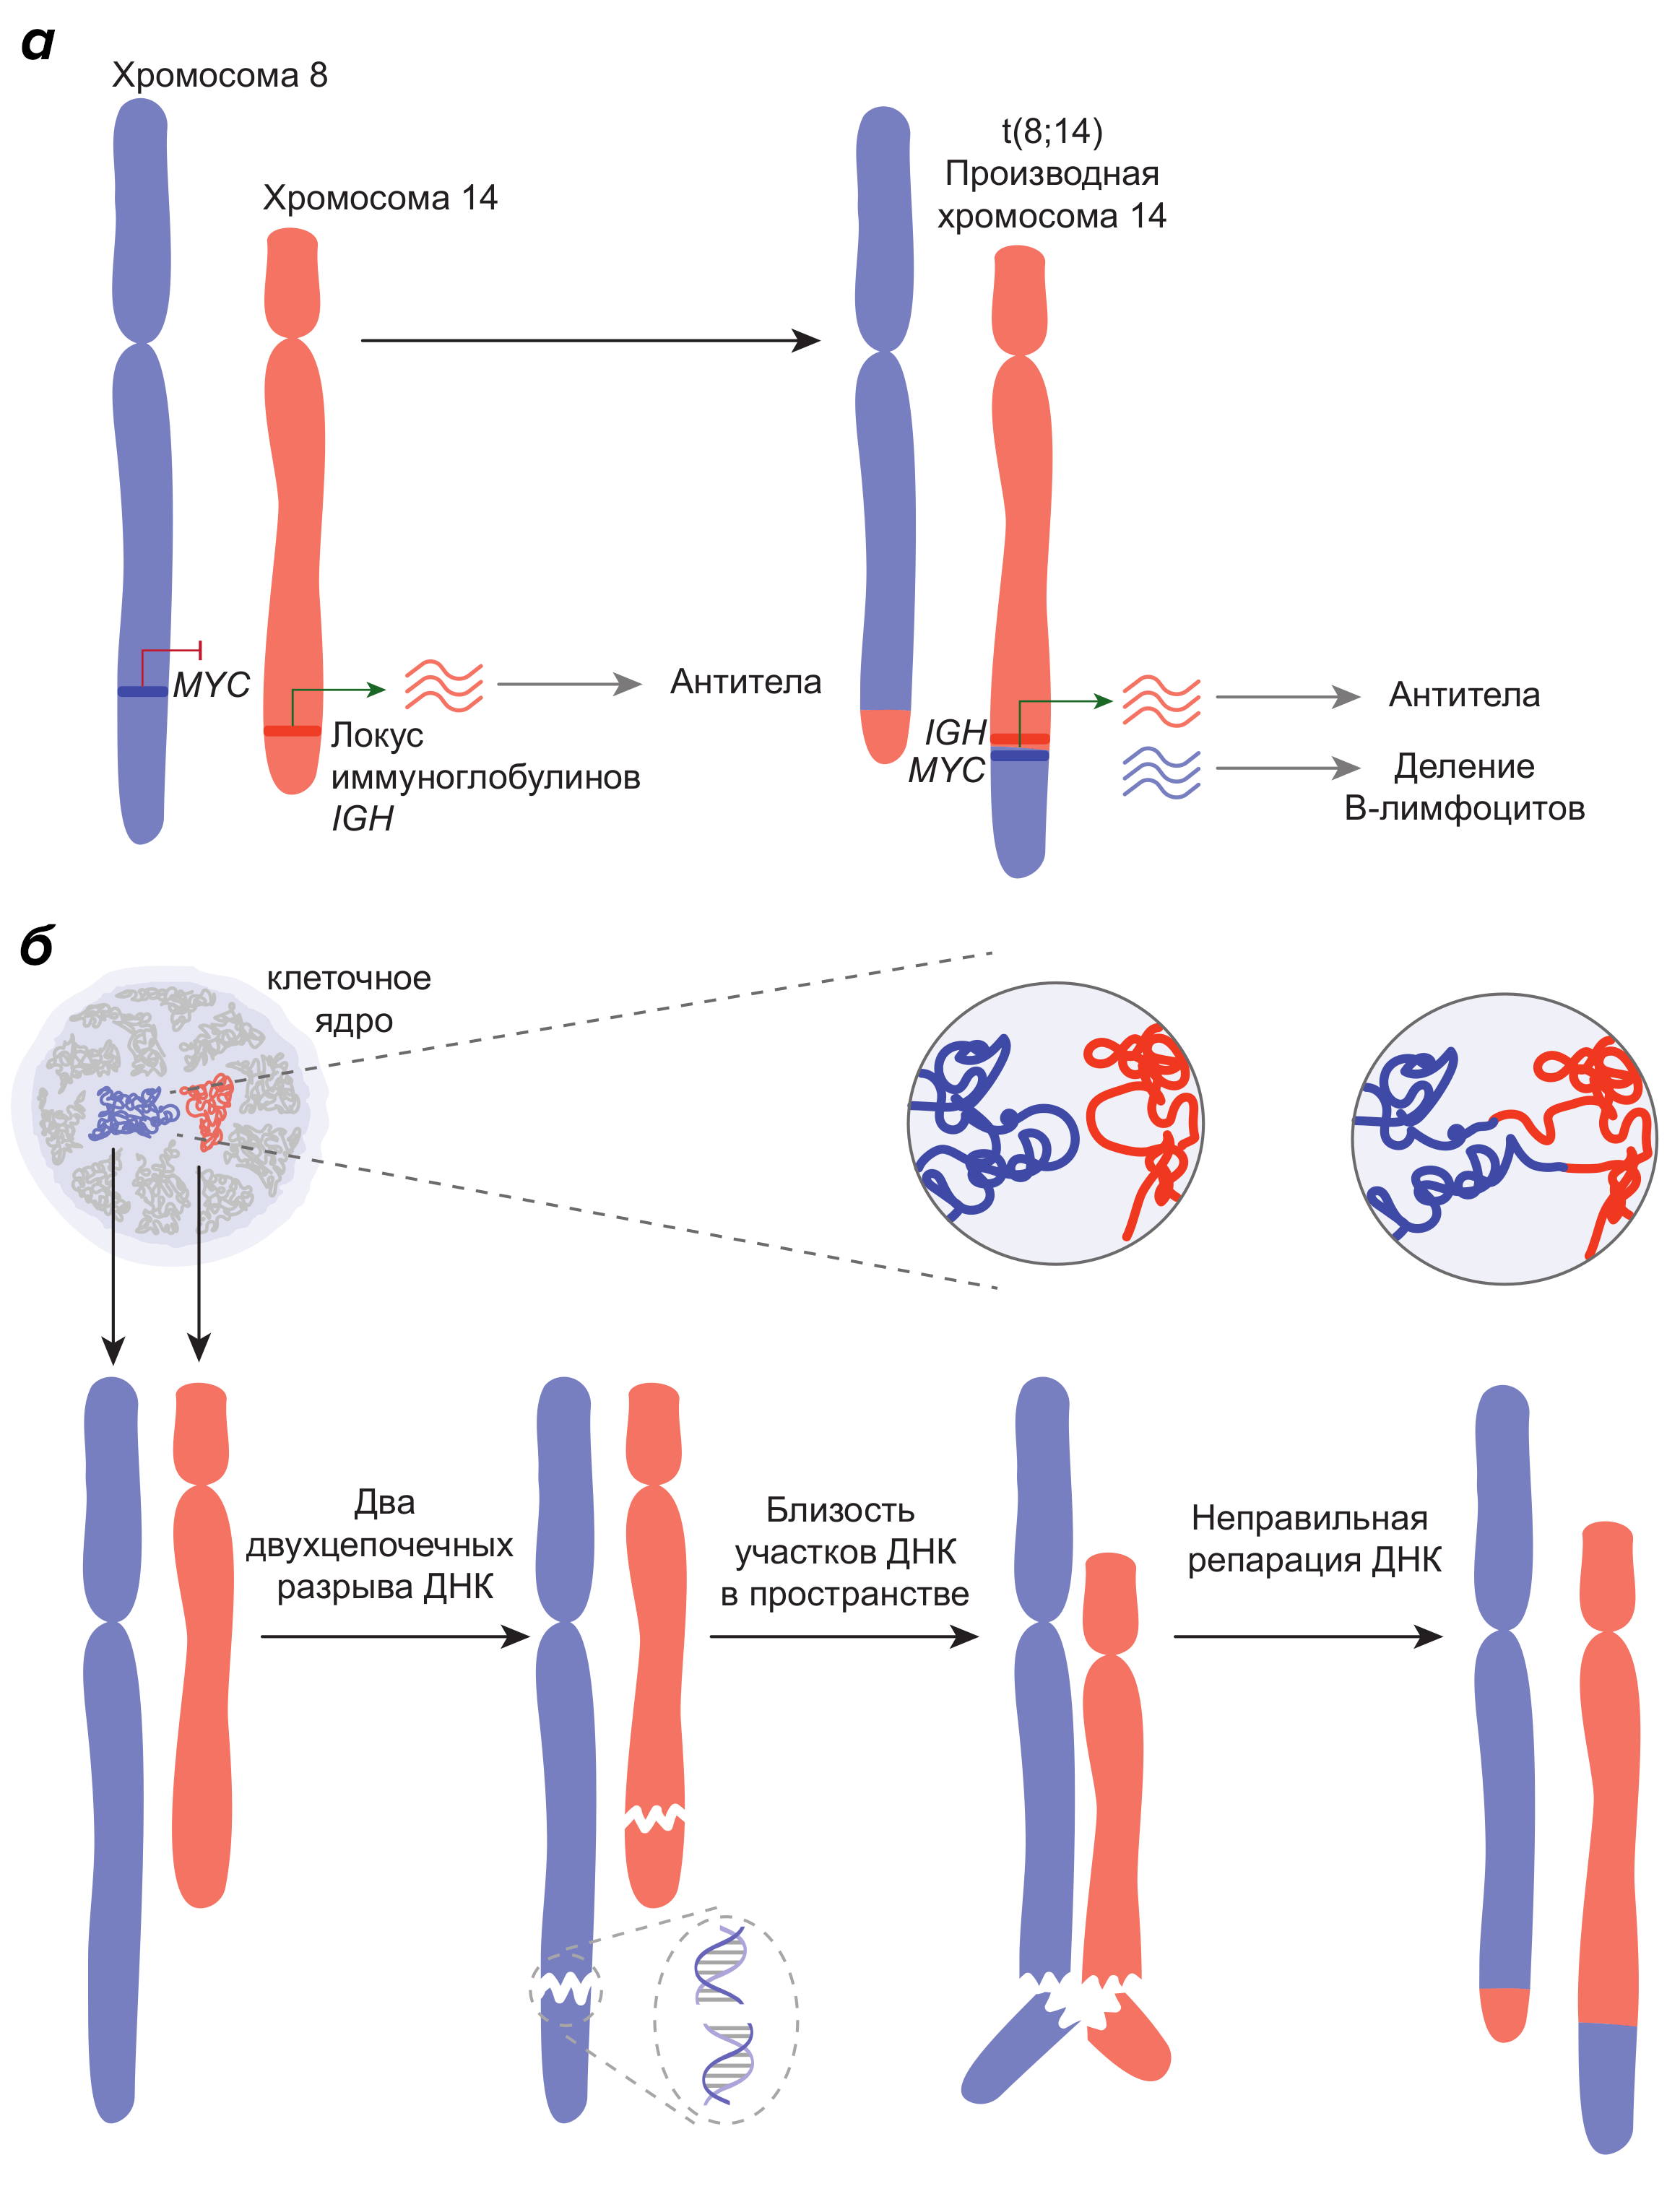 Хромосомные транслокации